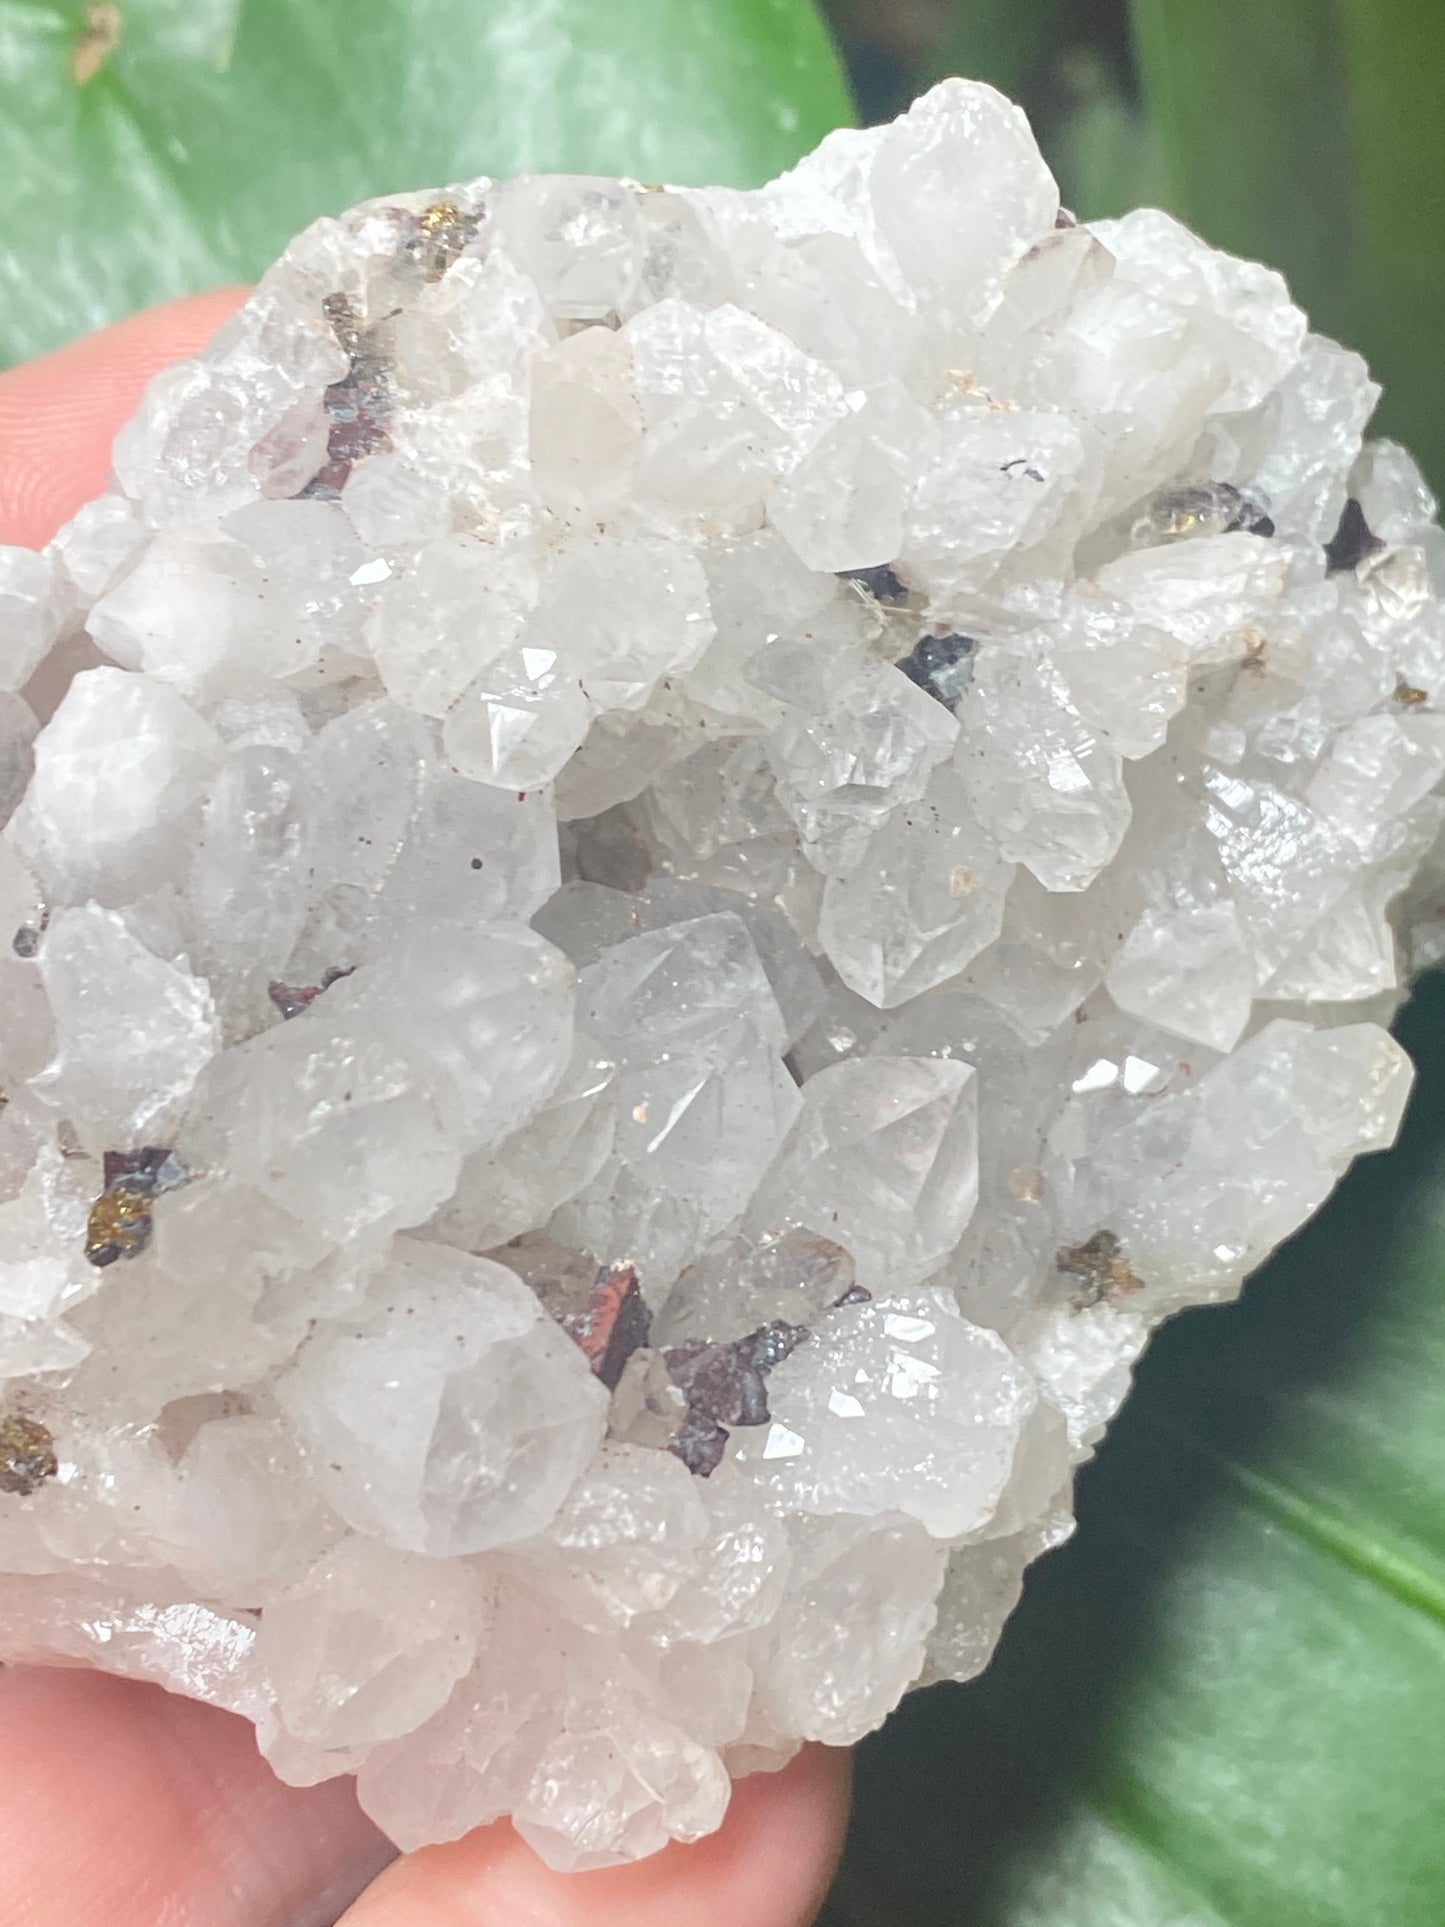 Hematite Quartz Cluster Pyrite Galena Crystal Cluster Specimen 7x7cm, 122g Raw Minerals